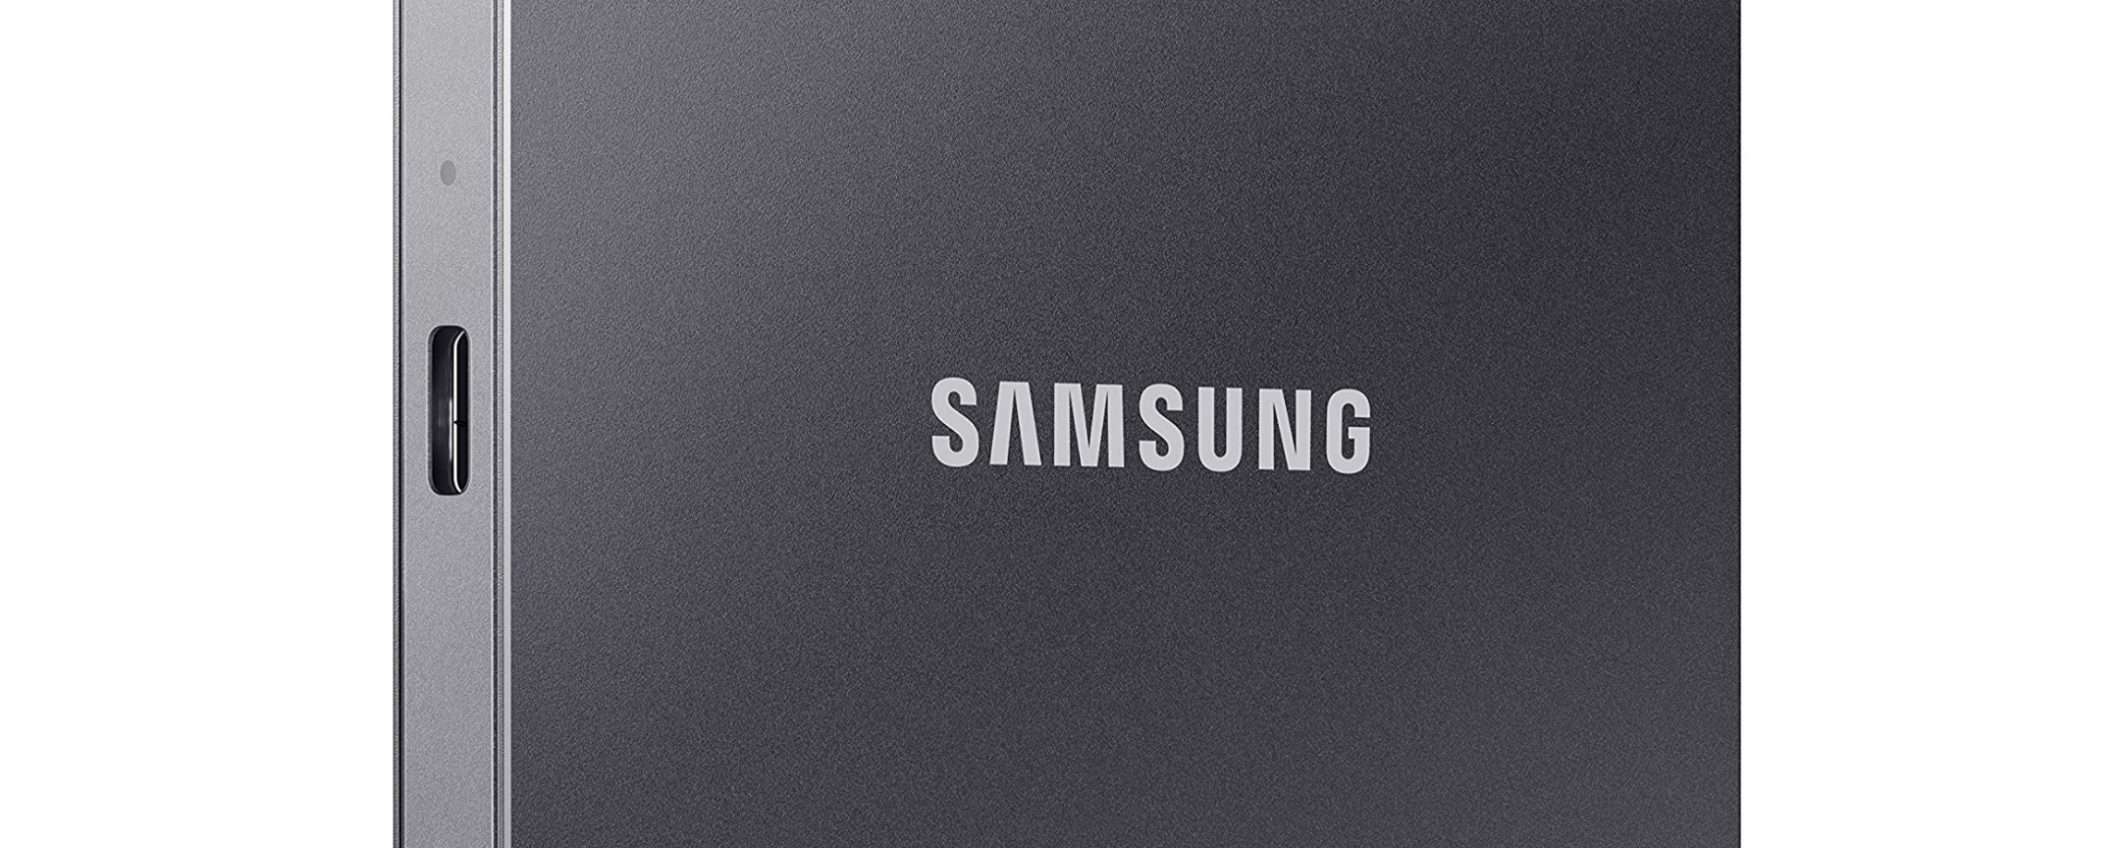 SSD portatile Samsung T7 2TB al minimo storico: un vero affare